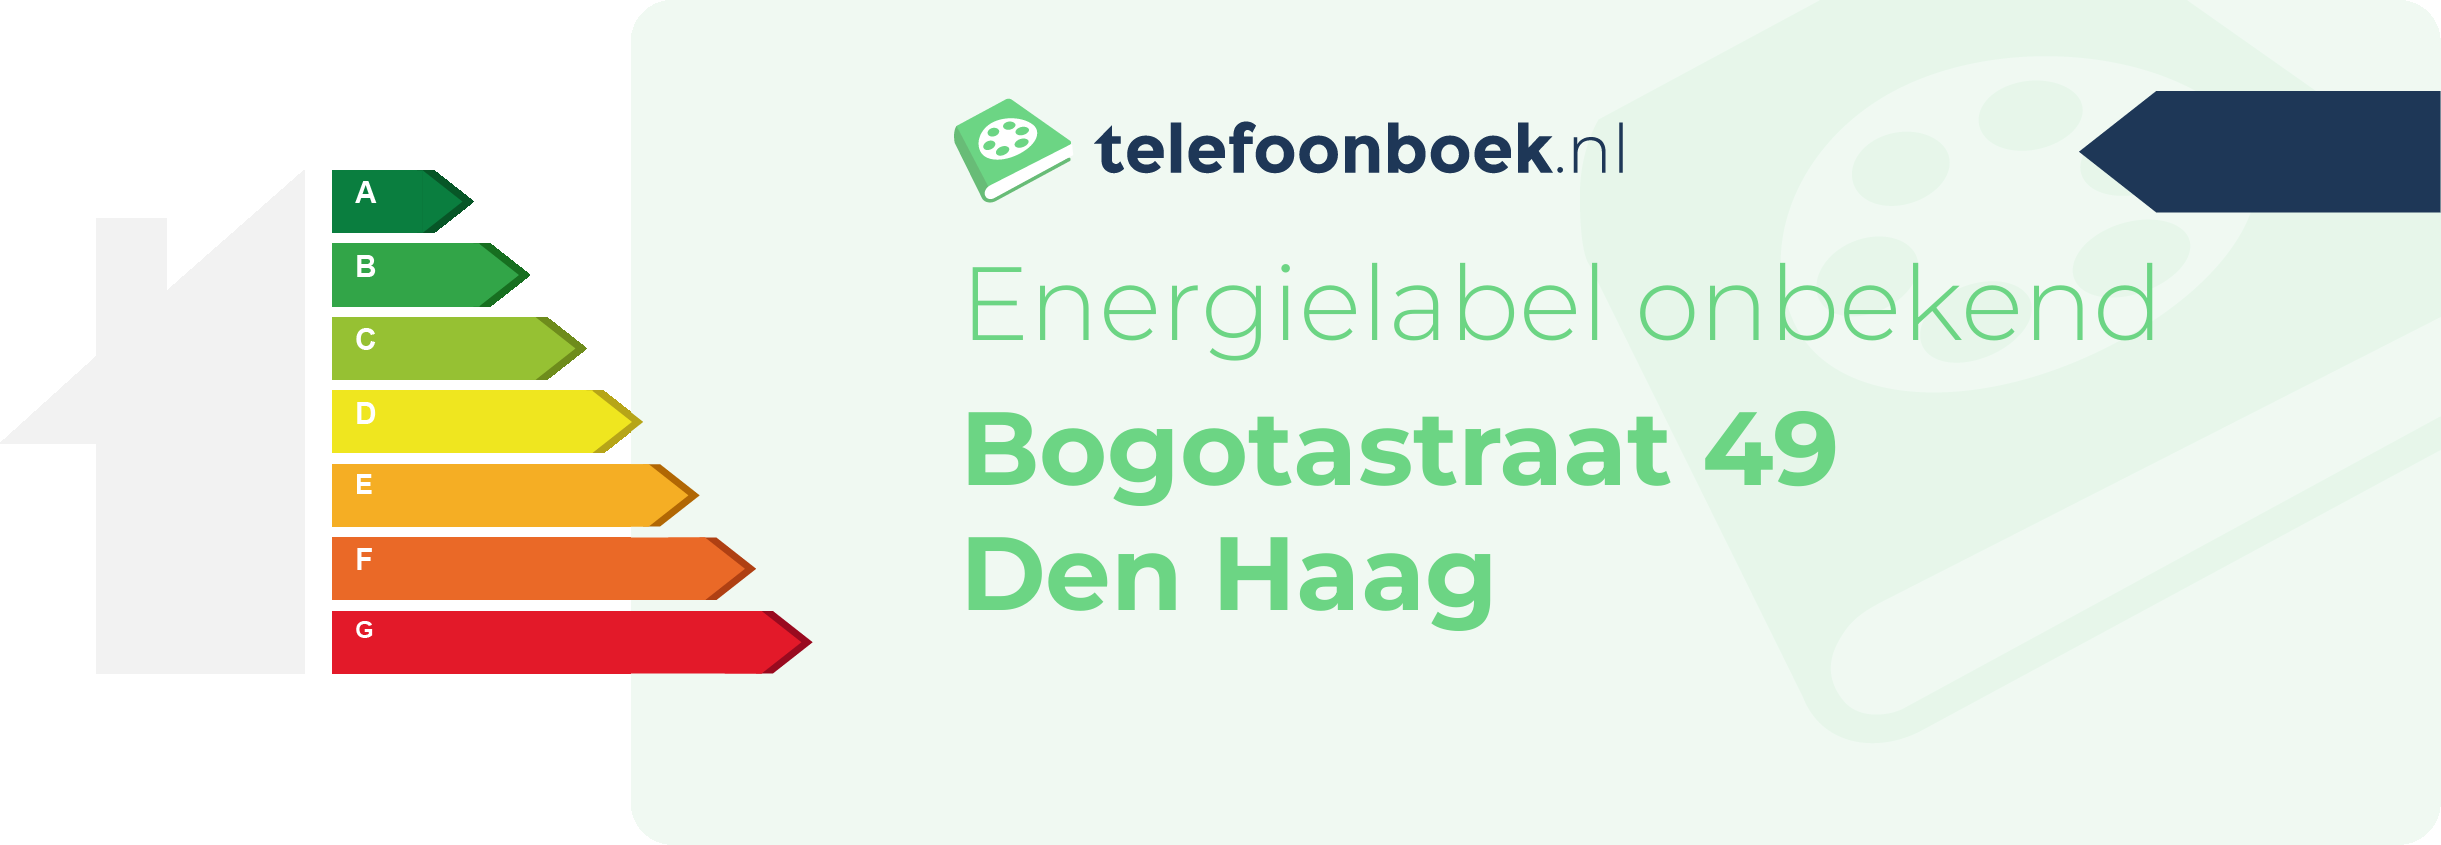 Energielabel Bogotastraat 49 Den Haag